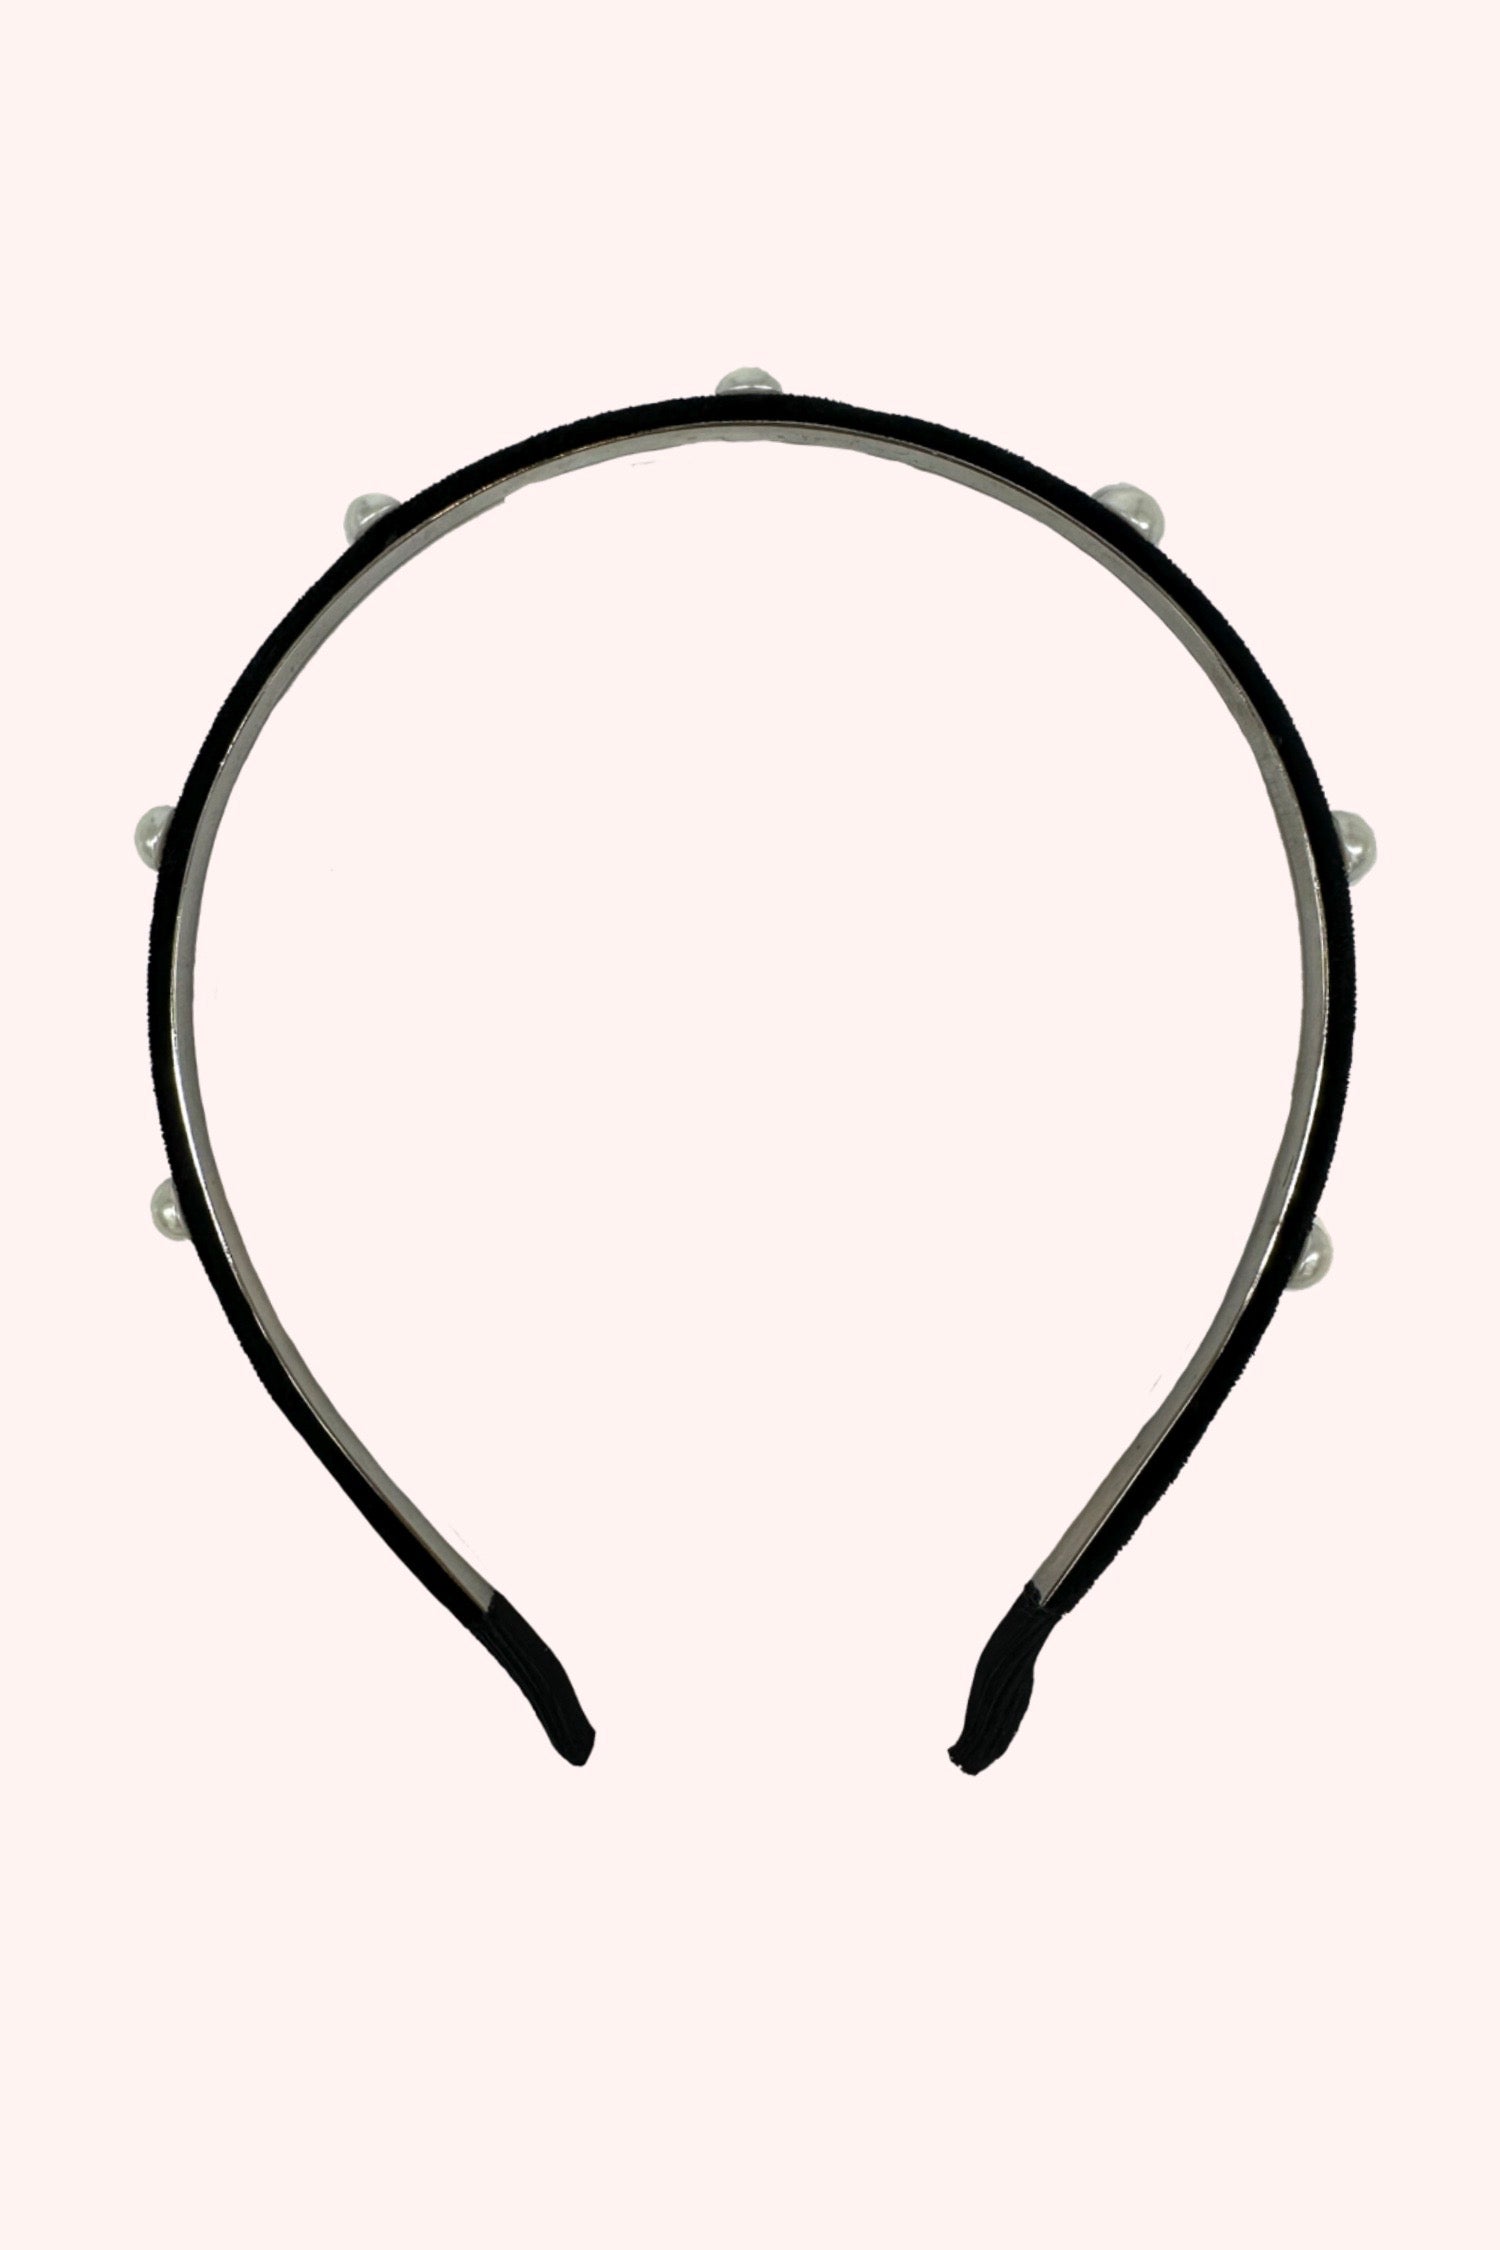 Velvet 7-Pearls Headband, black velvet open circle, polyester material Alloy metal base